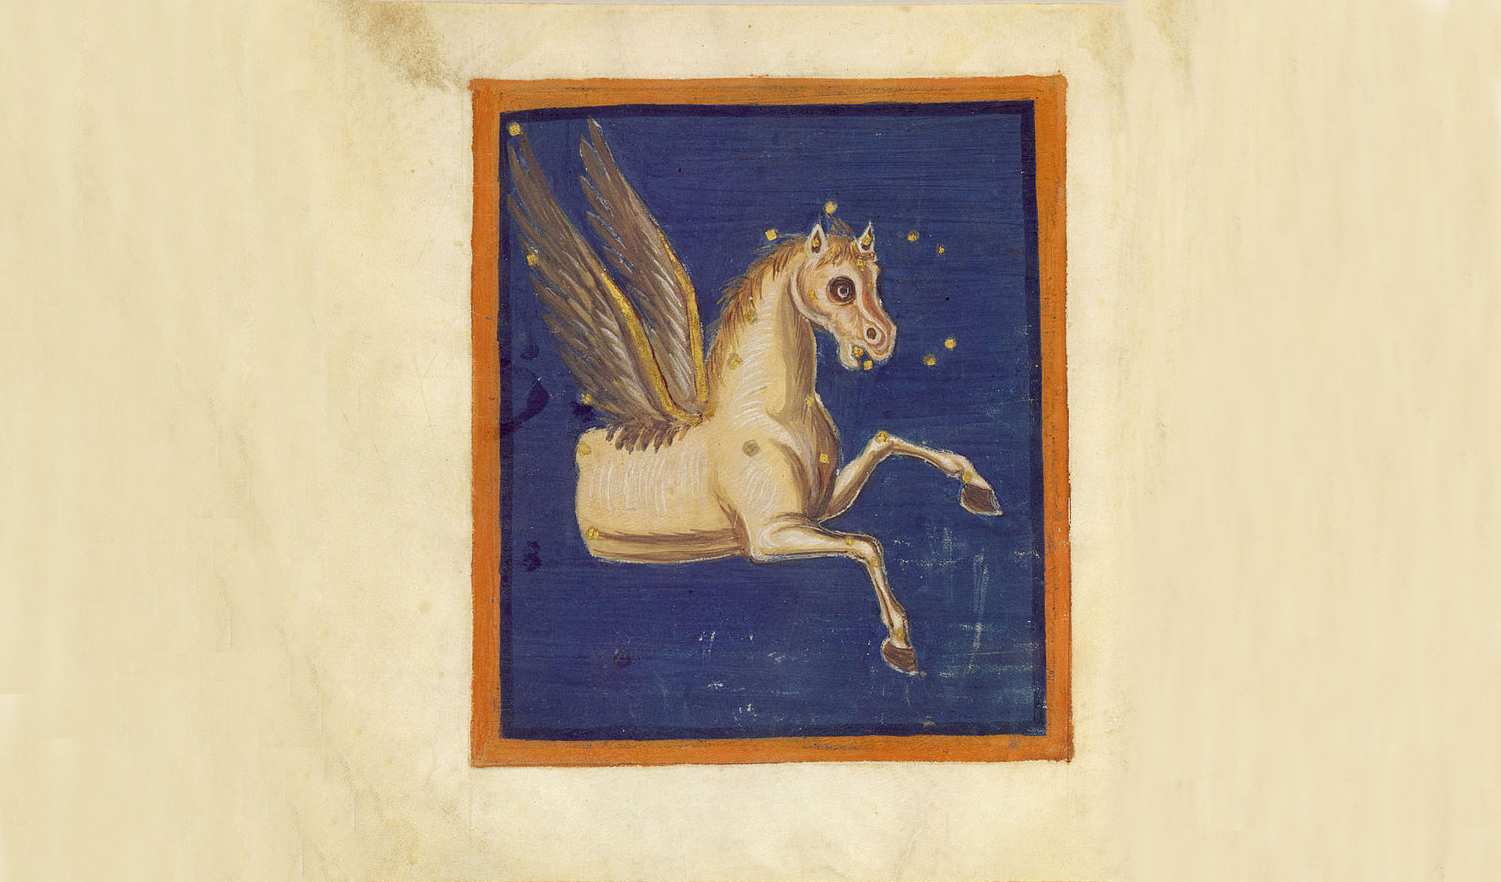 A Pegasus sok mindenre képes, mégis elbújhat névadója, Pégaszosz mögött